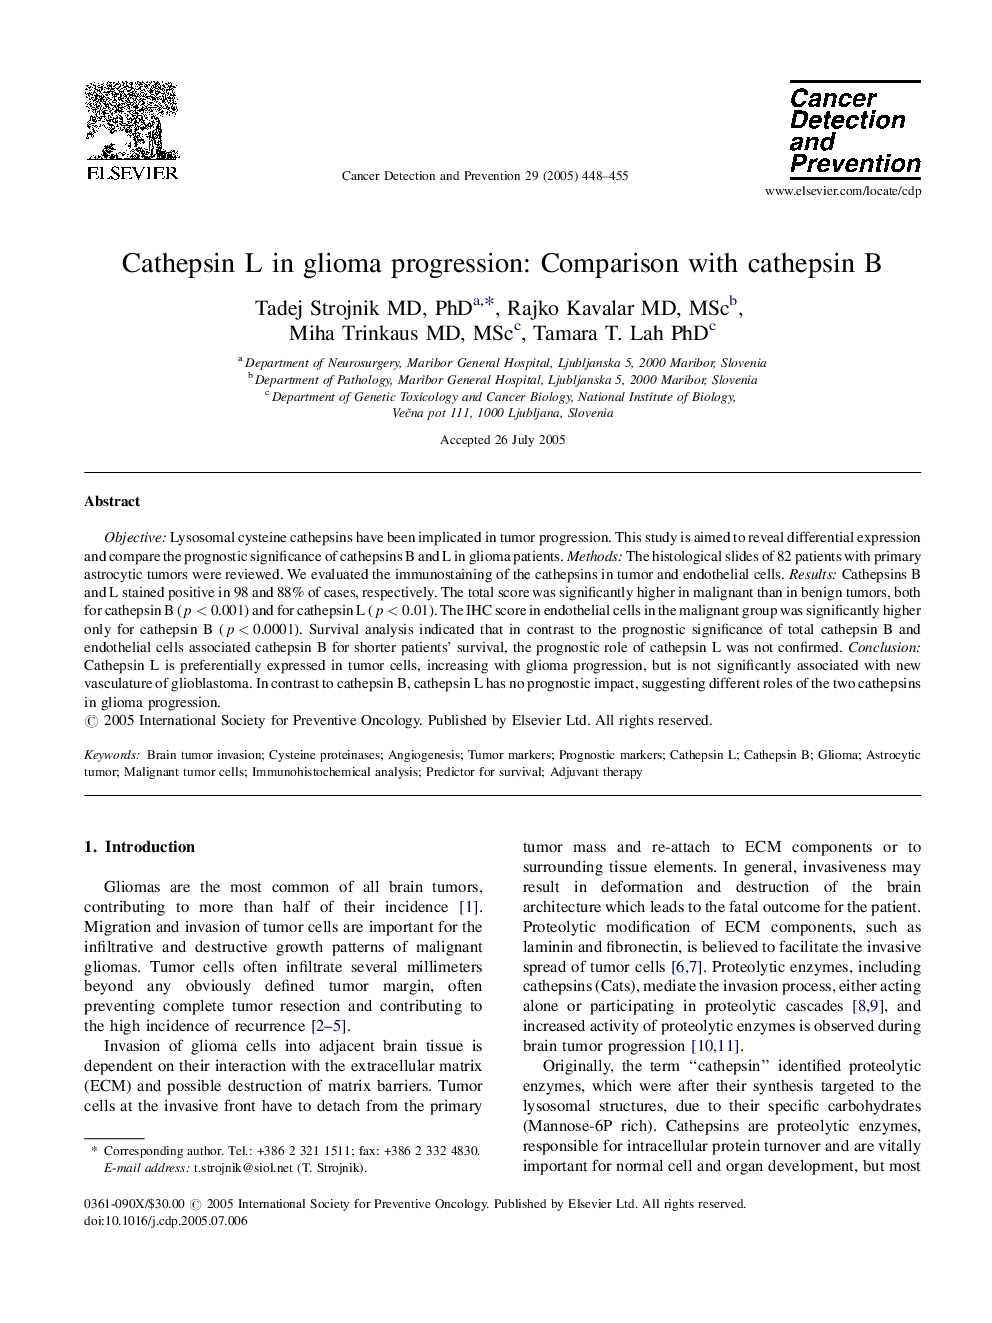 Cathepsin L in glioma progression: Comparison with cathepsin B